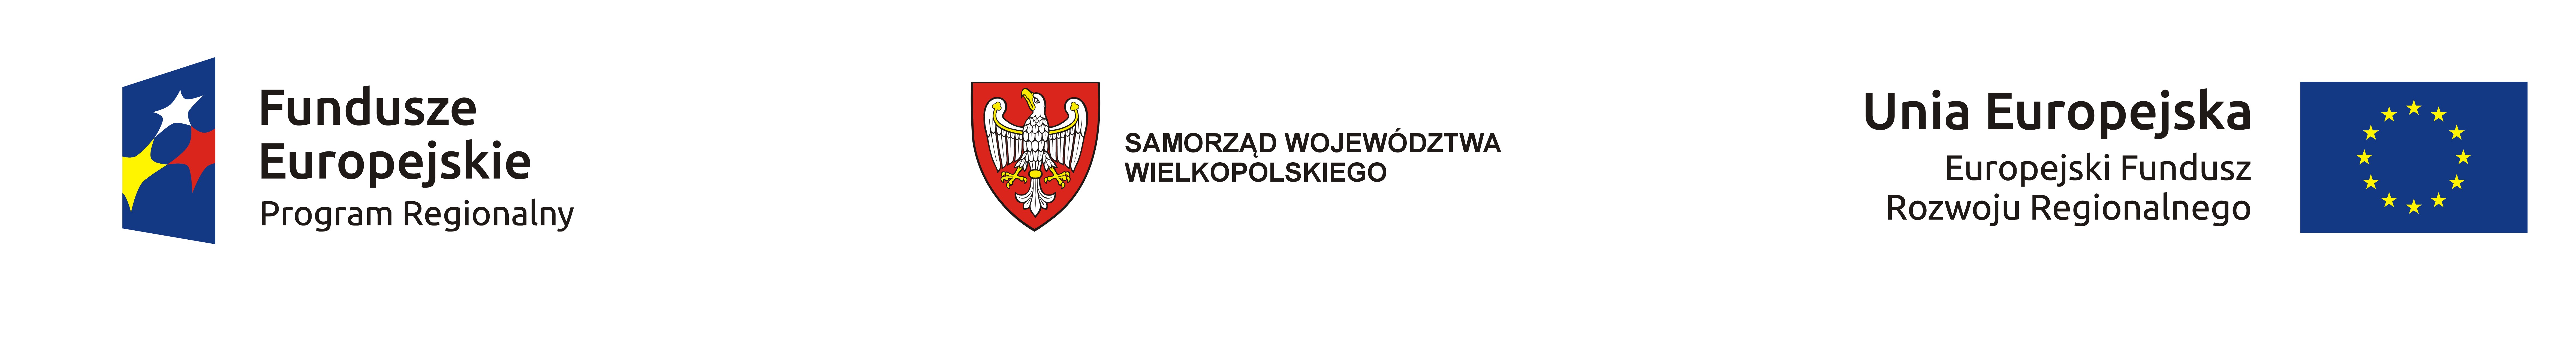 - przebudowa_drog_dojazdowych_do_dworca_pkp_w_srodzie_wielkopolskiej_logo_wojewoda.jpg